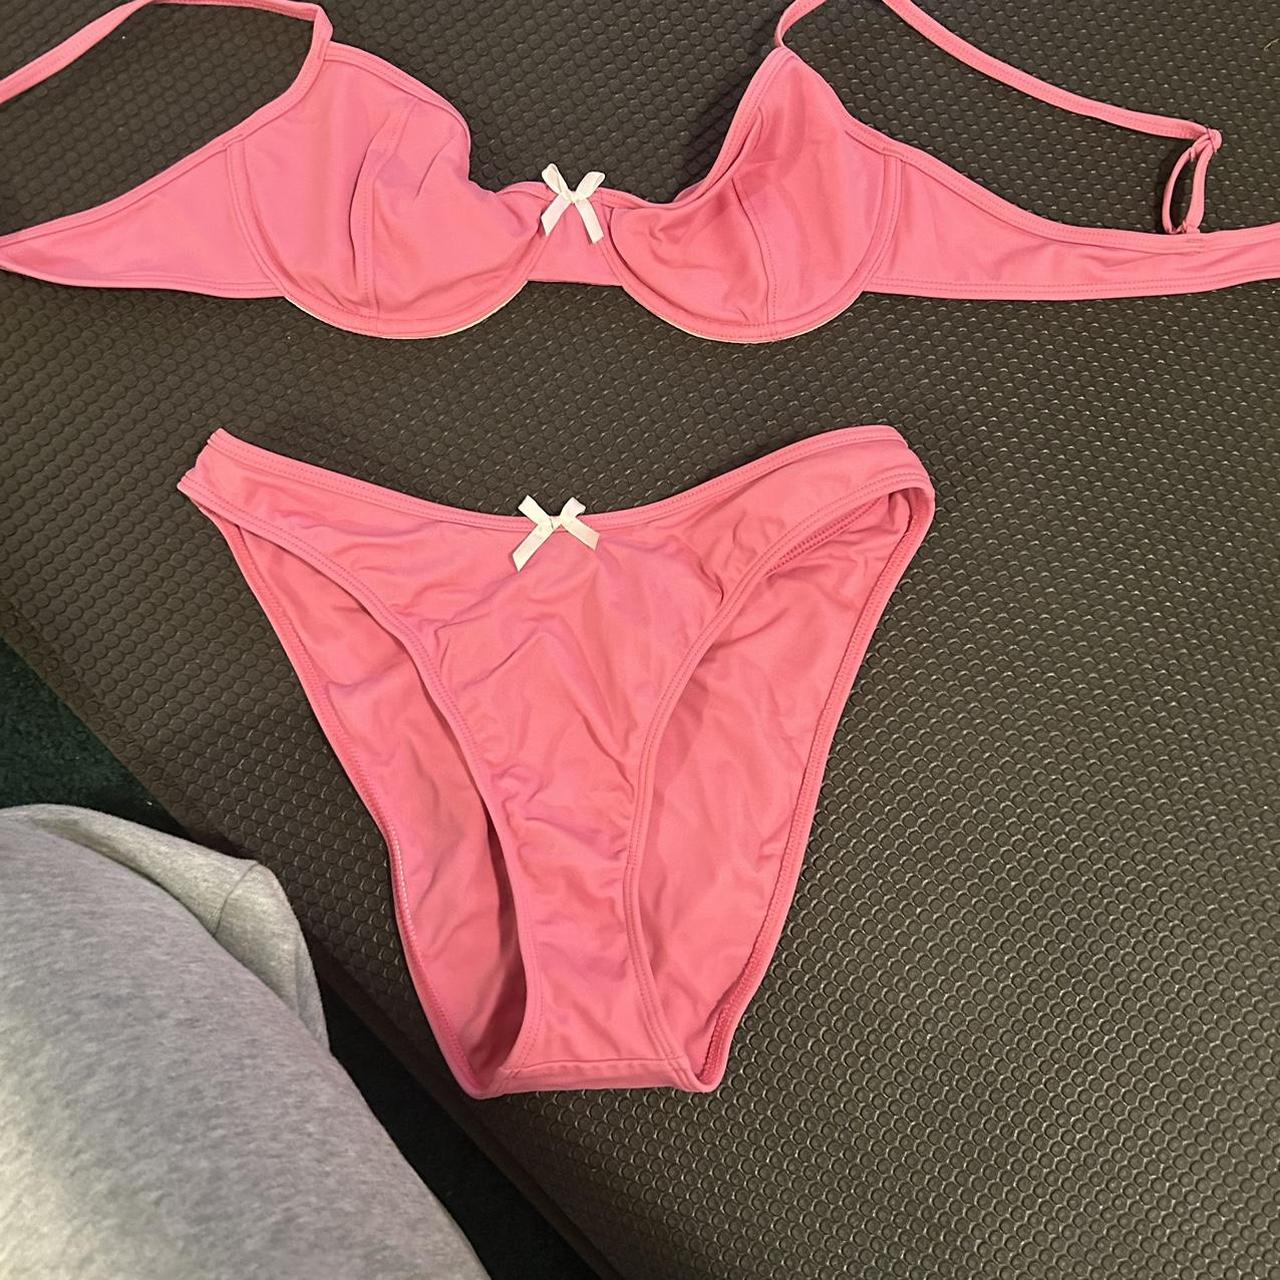 PacSun Women's Pink Bikinis-and-tankini-sets